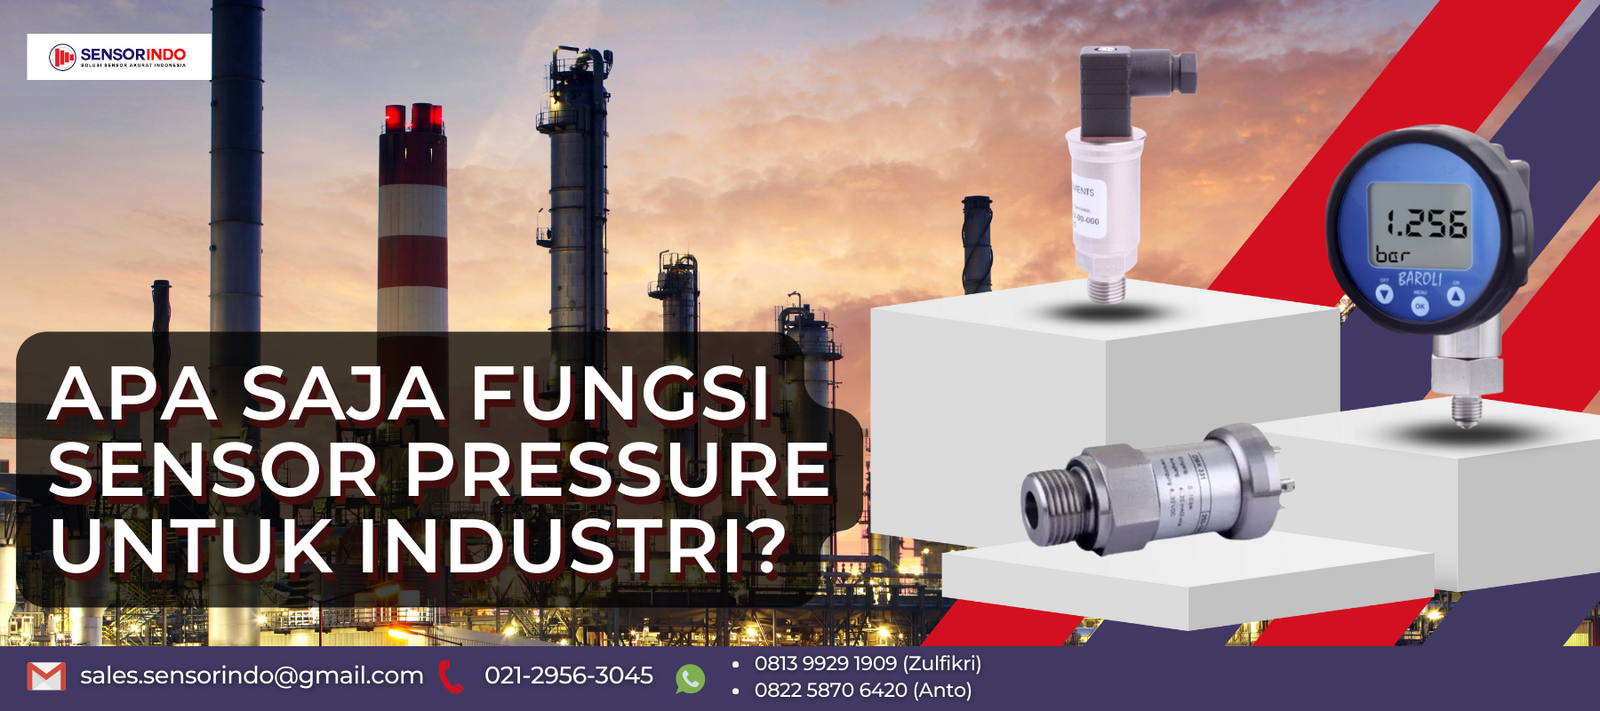 Apa Saja Fungsi Sensor Pressure Untuk Industri